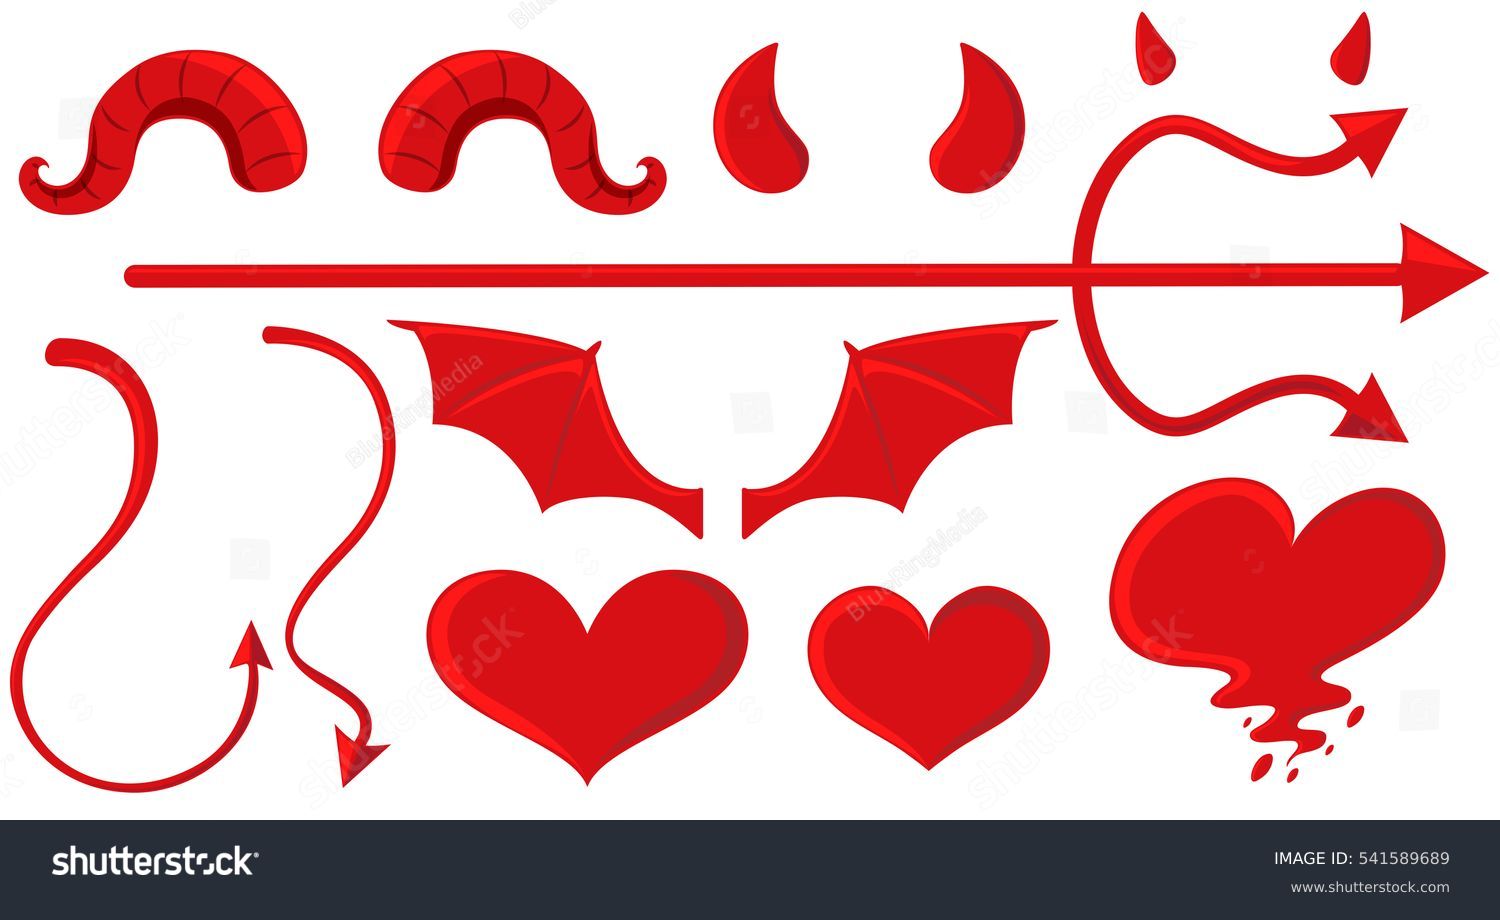 SVG of Angel and devil elements in red illustration svg